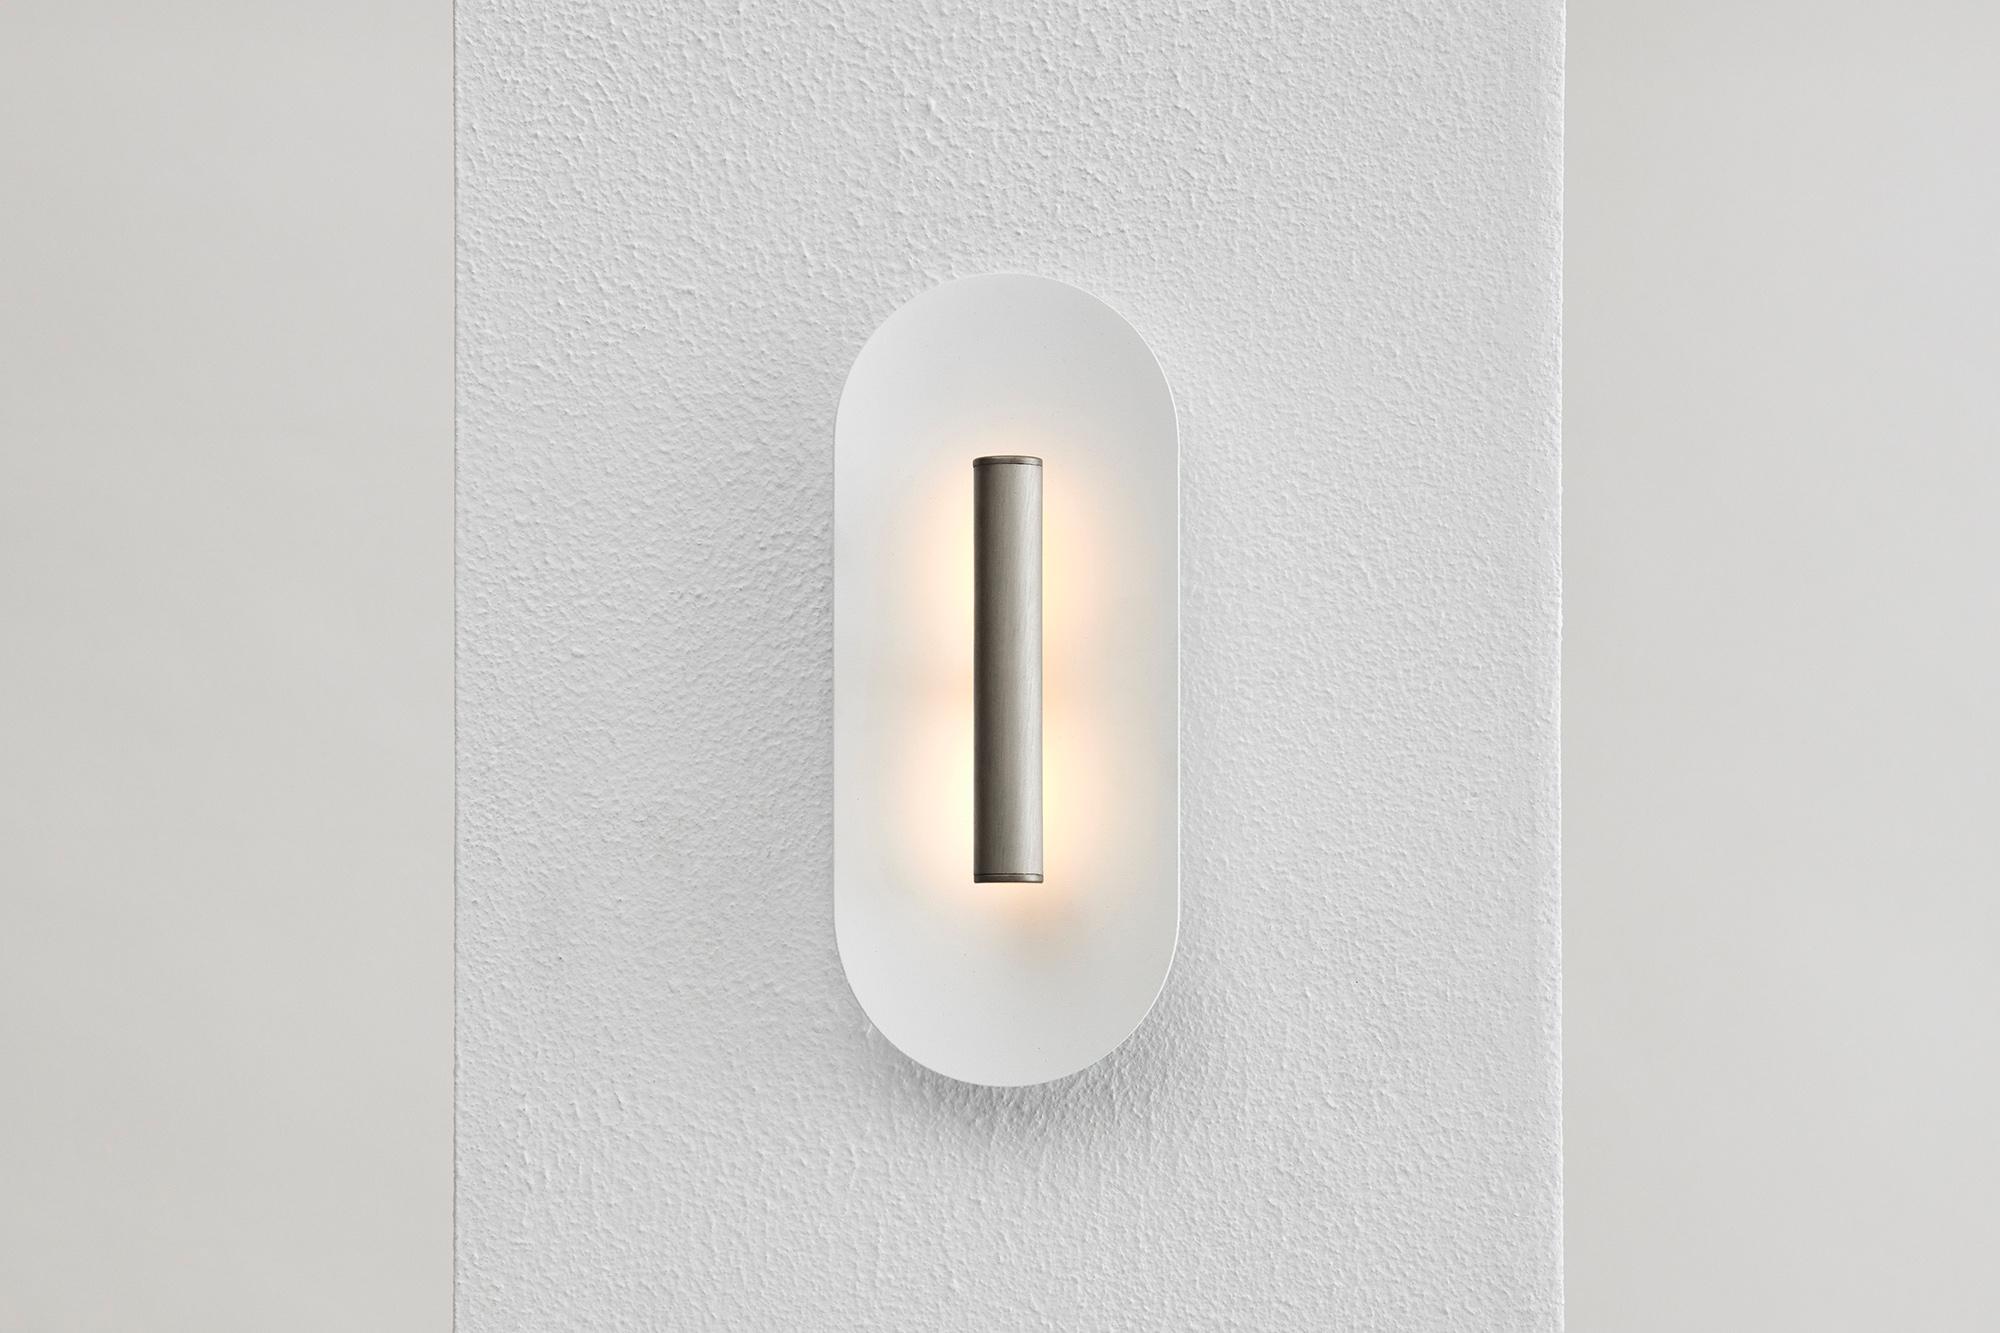 La puissante LED se reflète sur un plat délicatement incurvé, accentuant une pièce avec une douce lumière indirecte.
Le réflecteur en aluminium blanc mat texturé peut être assorti à l'une des trois finitions suivantes : noir anodisé, or satiné ou